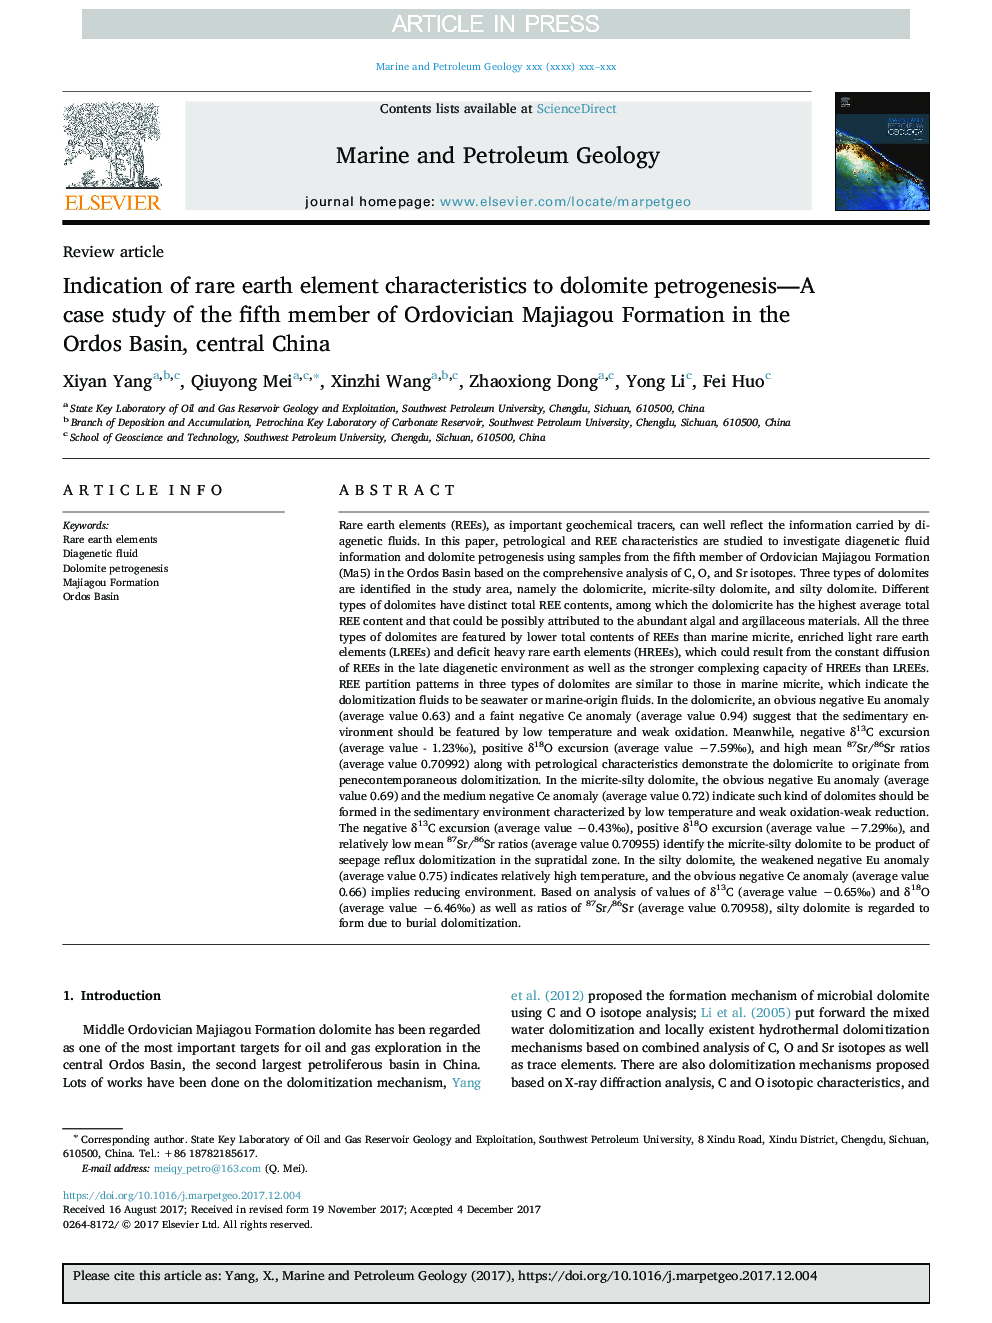 نشانه های ویژگی های عناصر کمیاب خاکی به پتروژنز دولومیت - مطالعه موردی عضو پنجم سازند ارتودویک ماجیگو در حوضه رود اردو، مرکزی چین